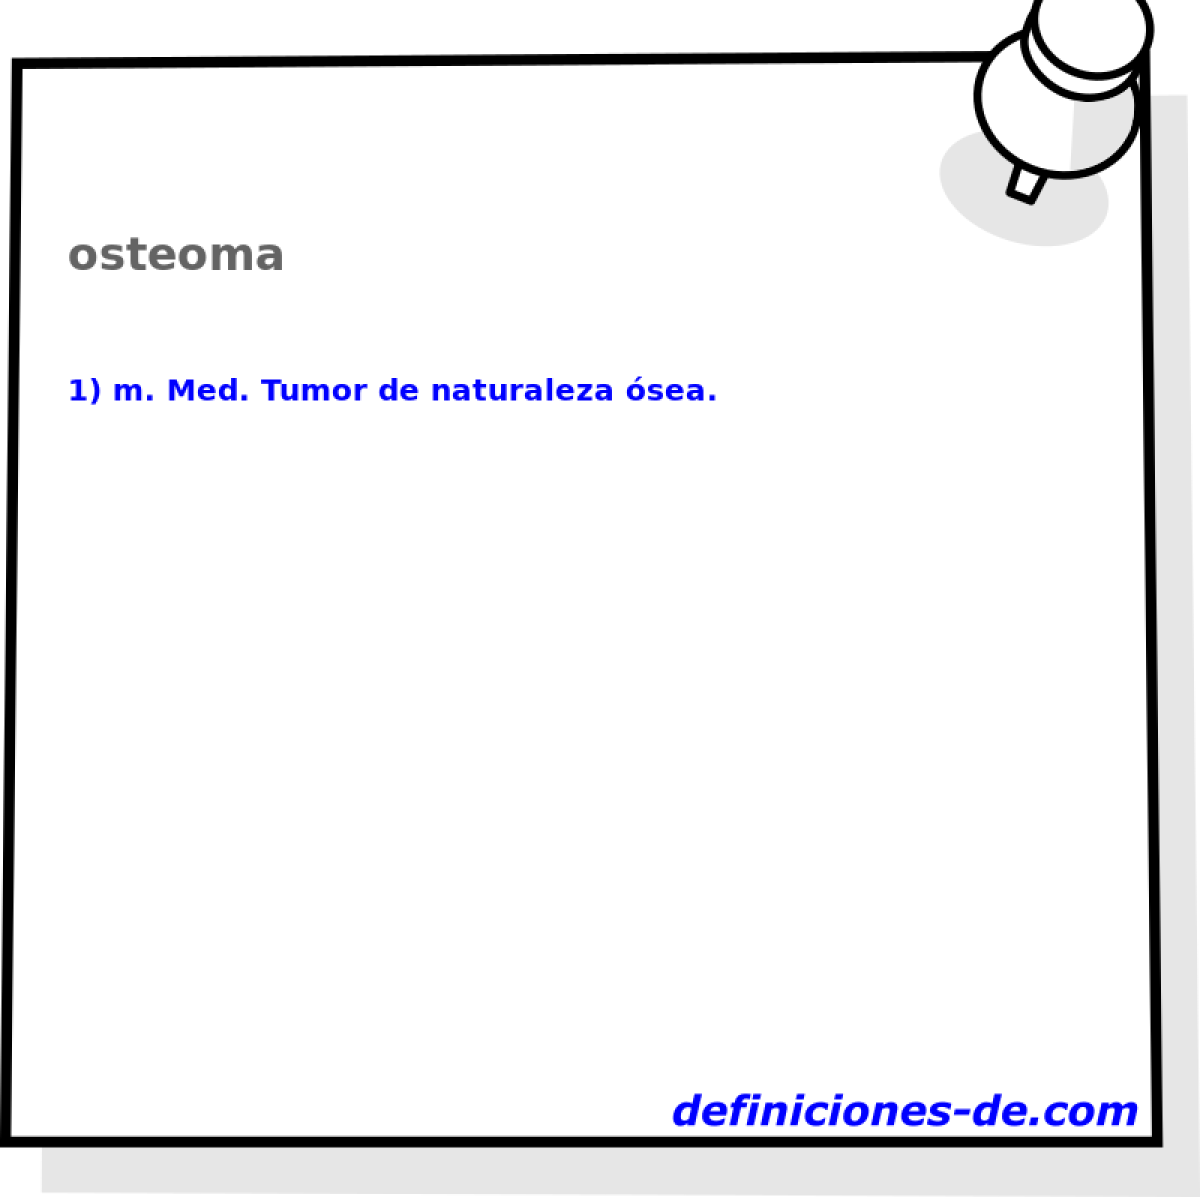 osteoma 